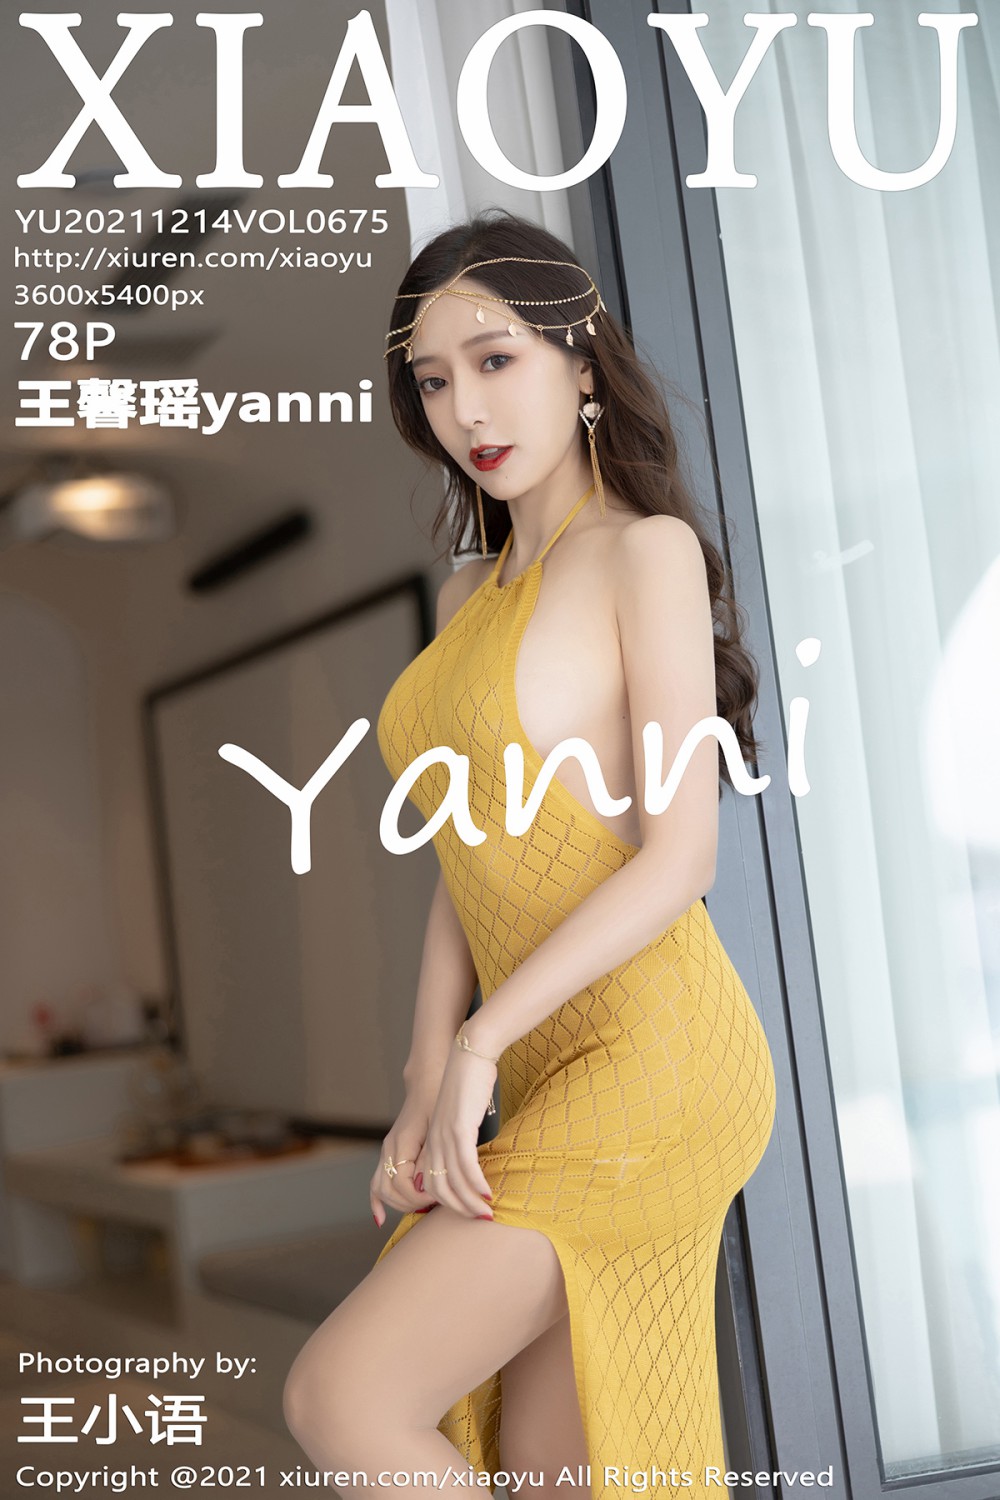 [XIAOYU语画界] 2021.12.14 VOL.675 王馨瑶yanni 黄色长裙 [78+1P]